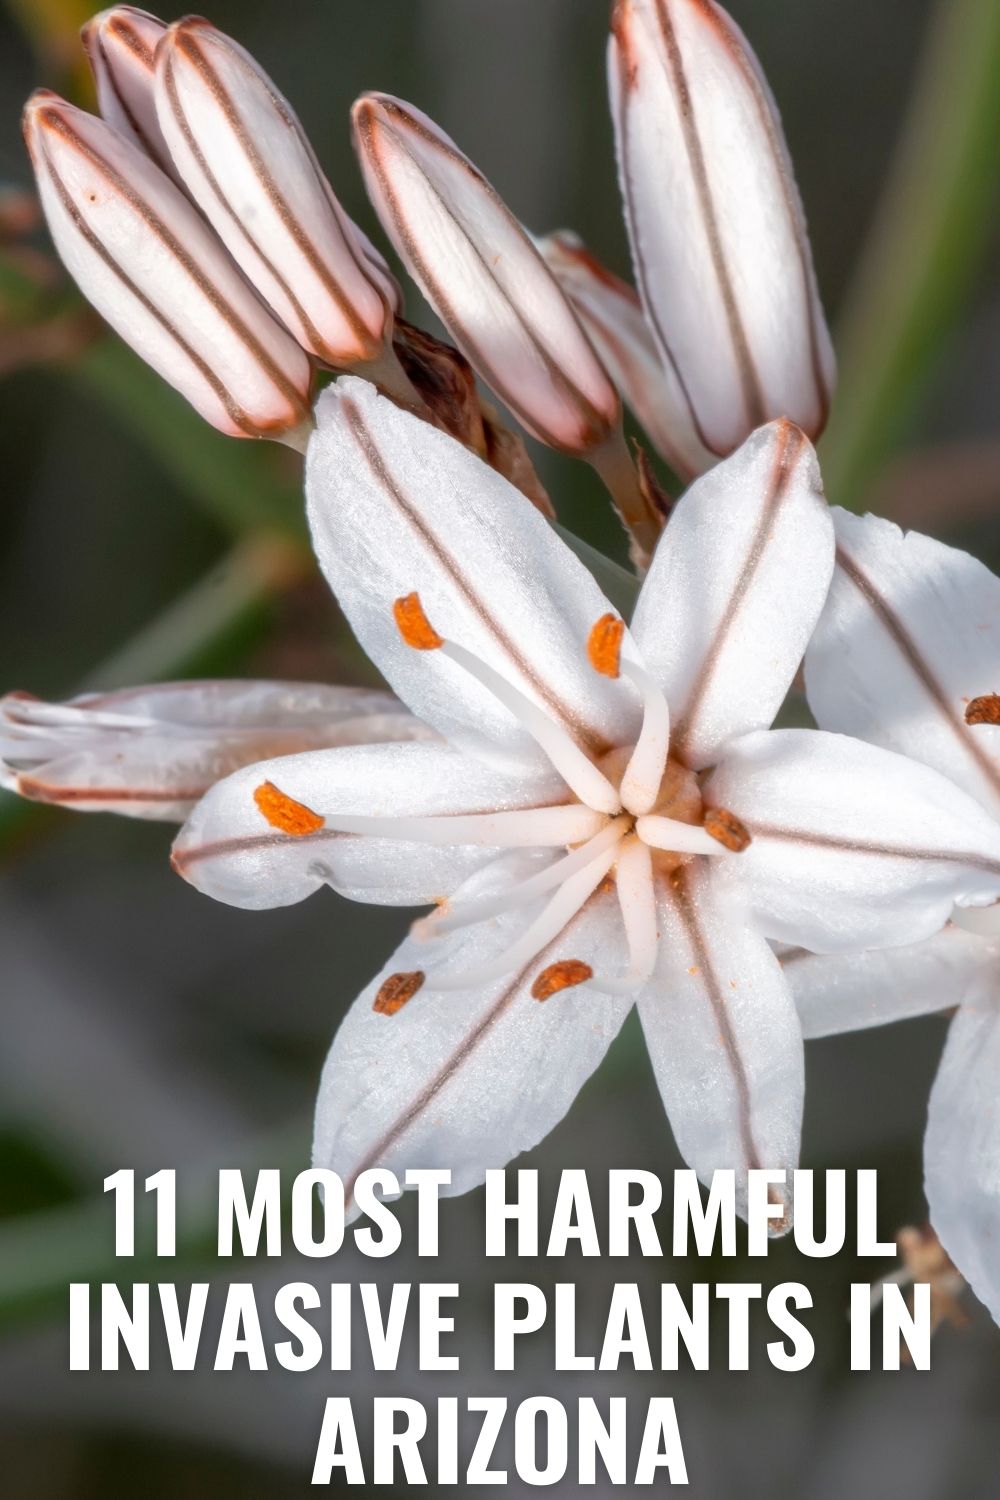 11 Most Harmful Invasive Plants in Arizona